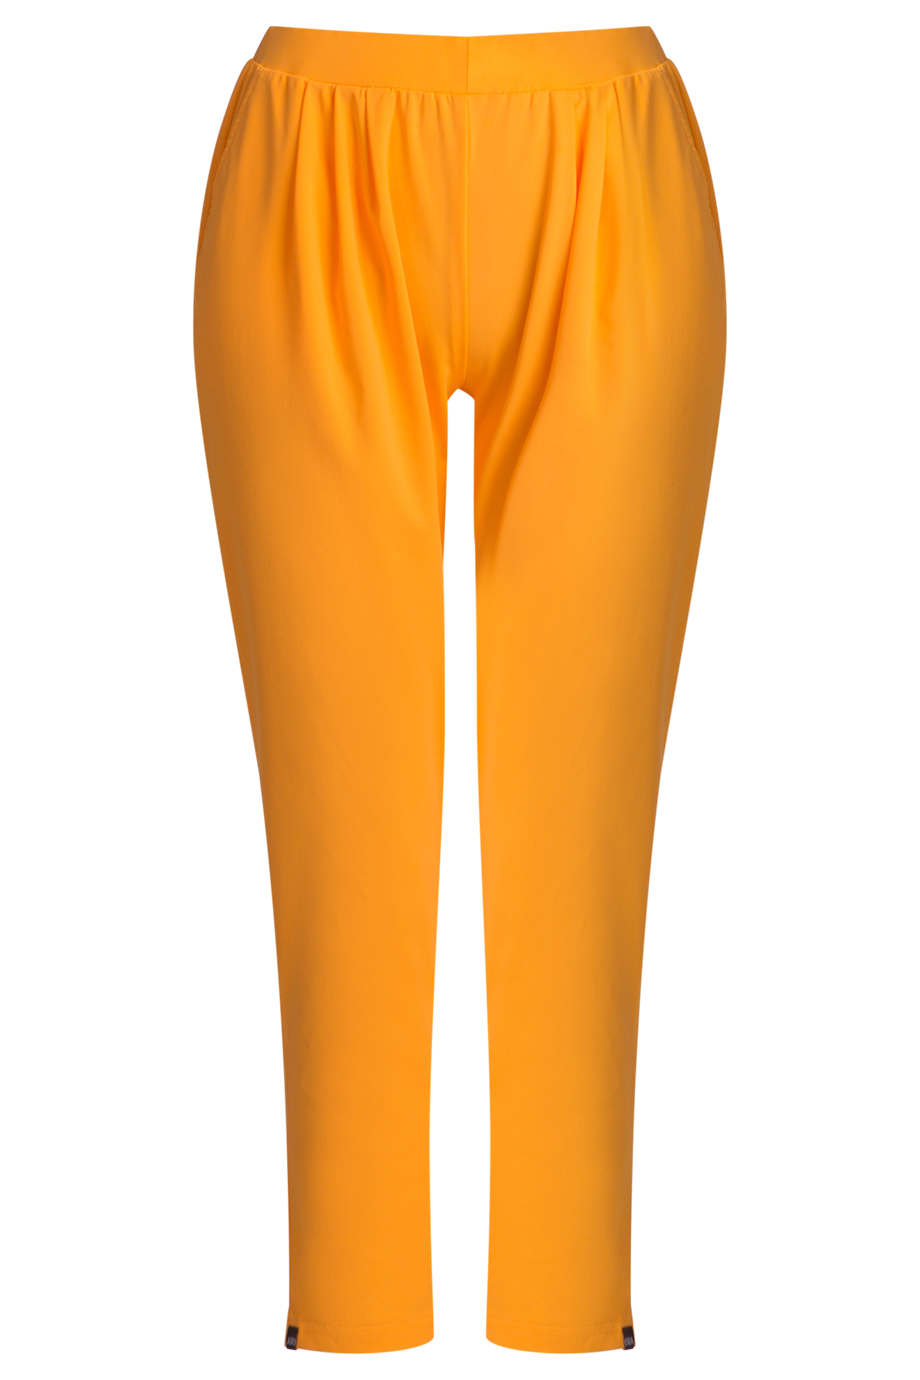 Cynthia Flexi Pants/ Holland- Quần dáng bom chất liệu thể thao màu cam Hà Lan